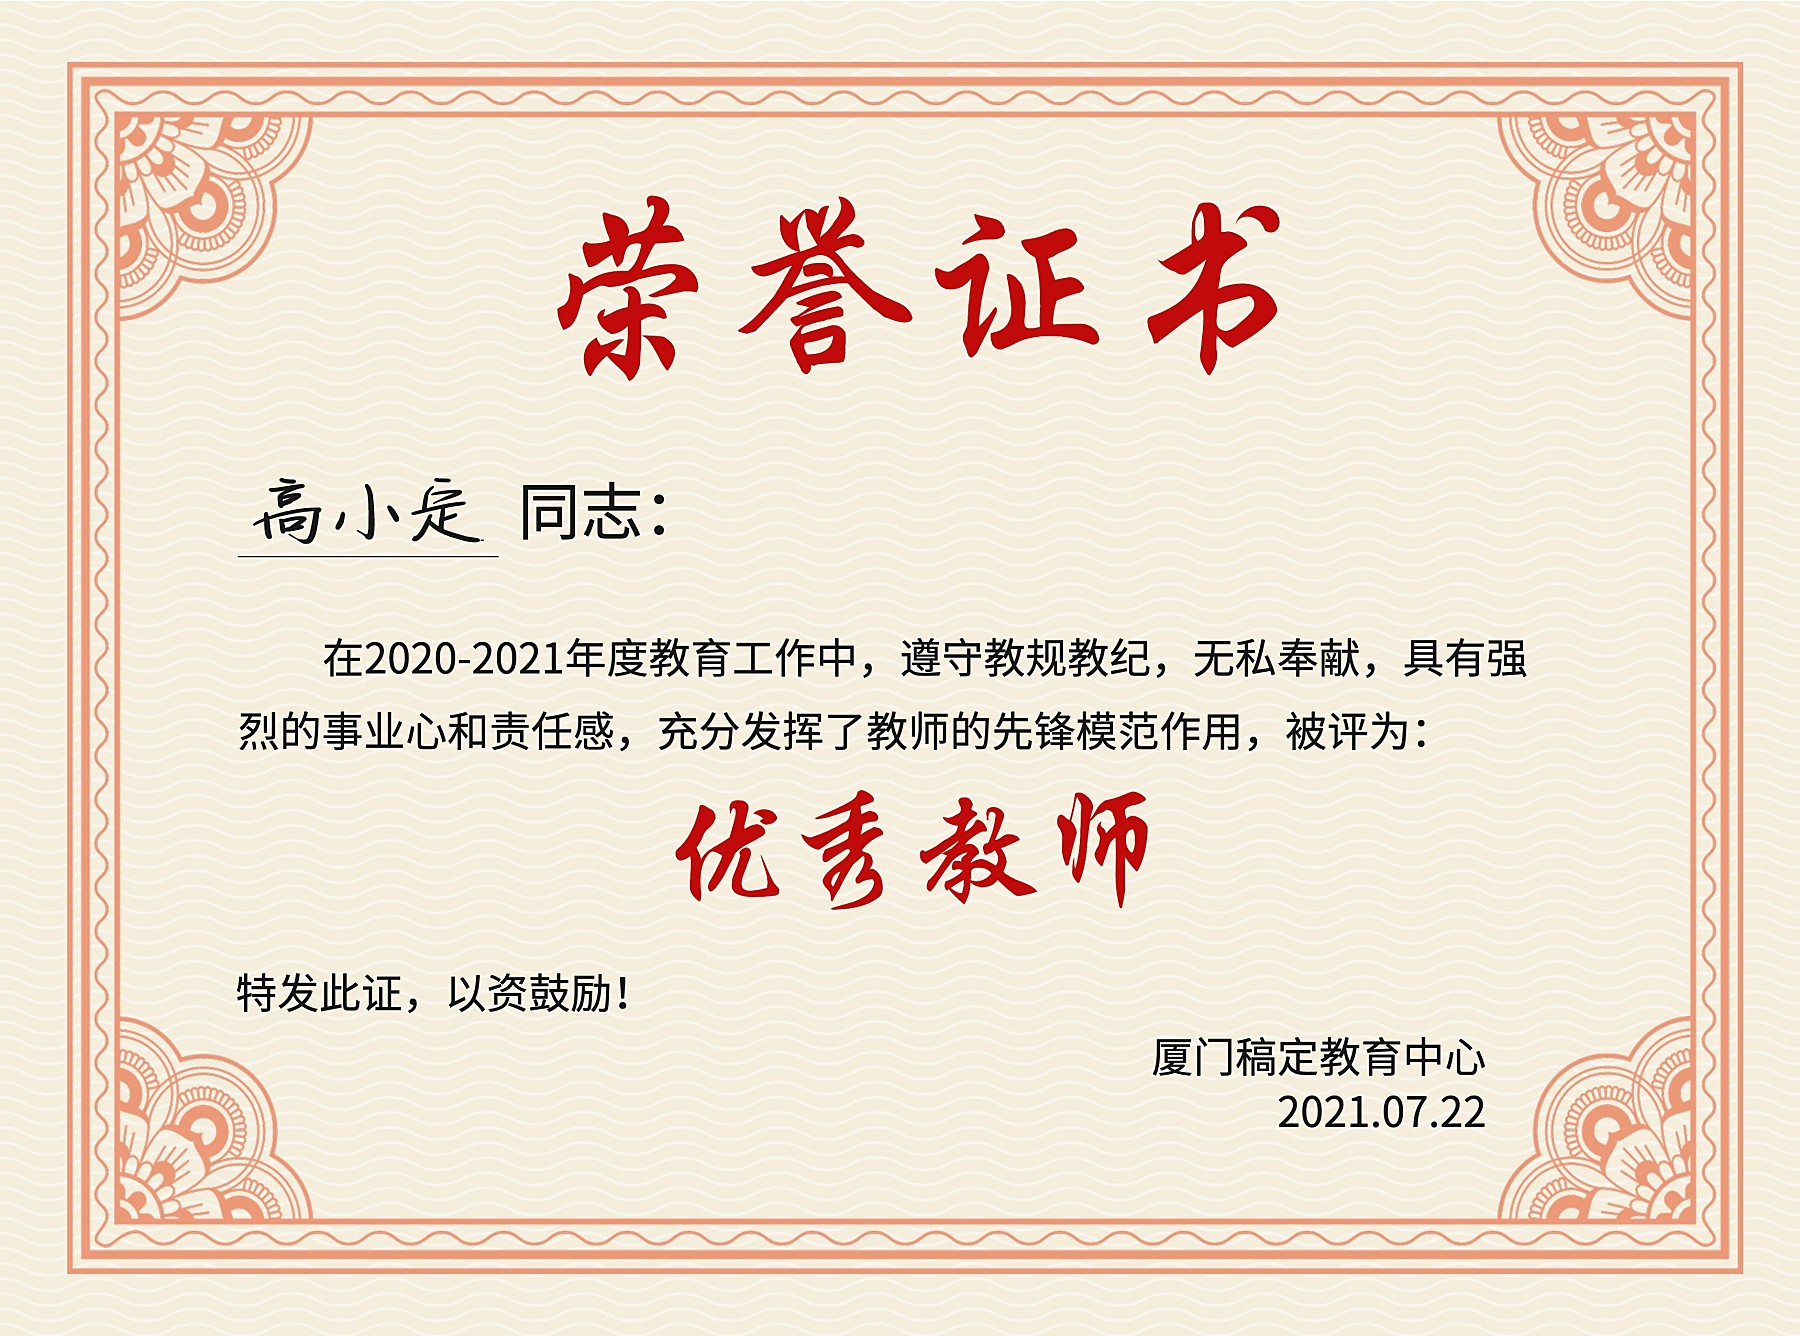 我院李林泽老师荣获“2014-2015年度优秀工会工作积极分子”-西南大学国际学院